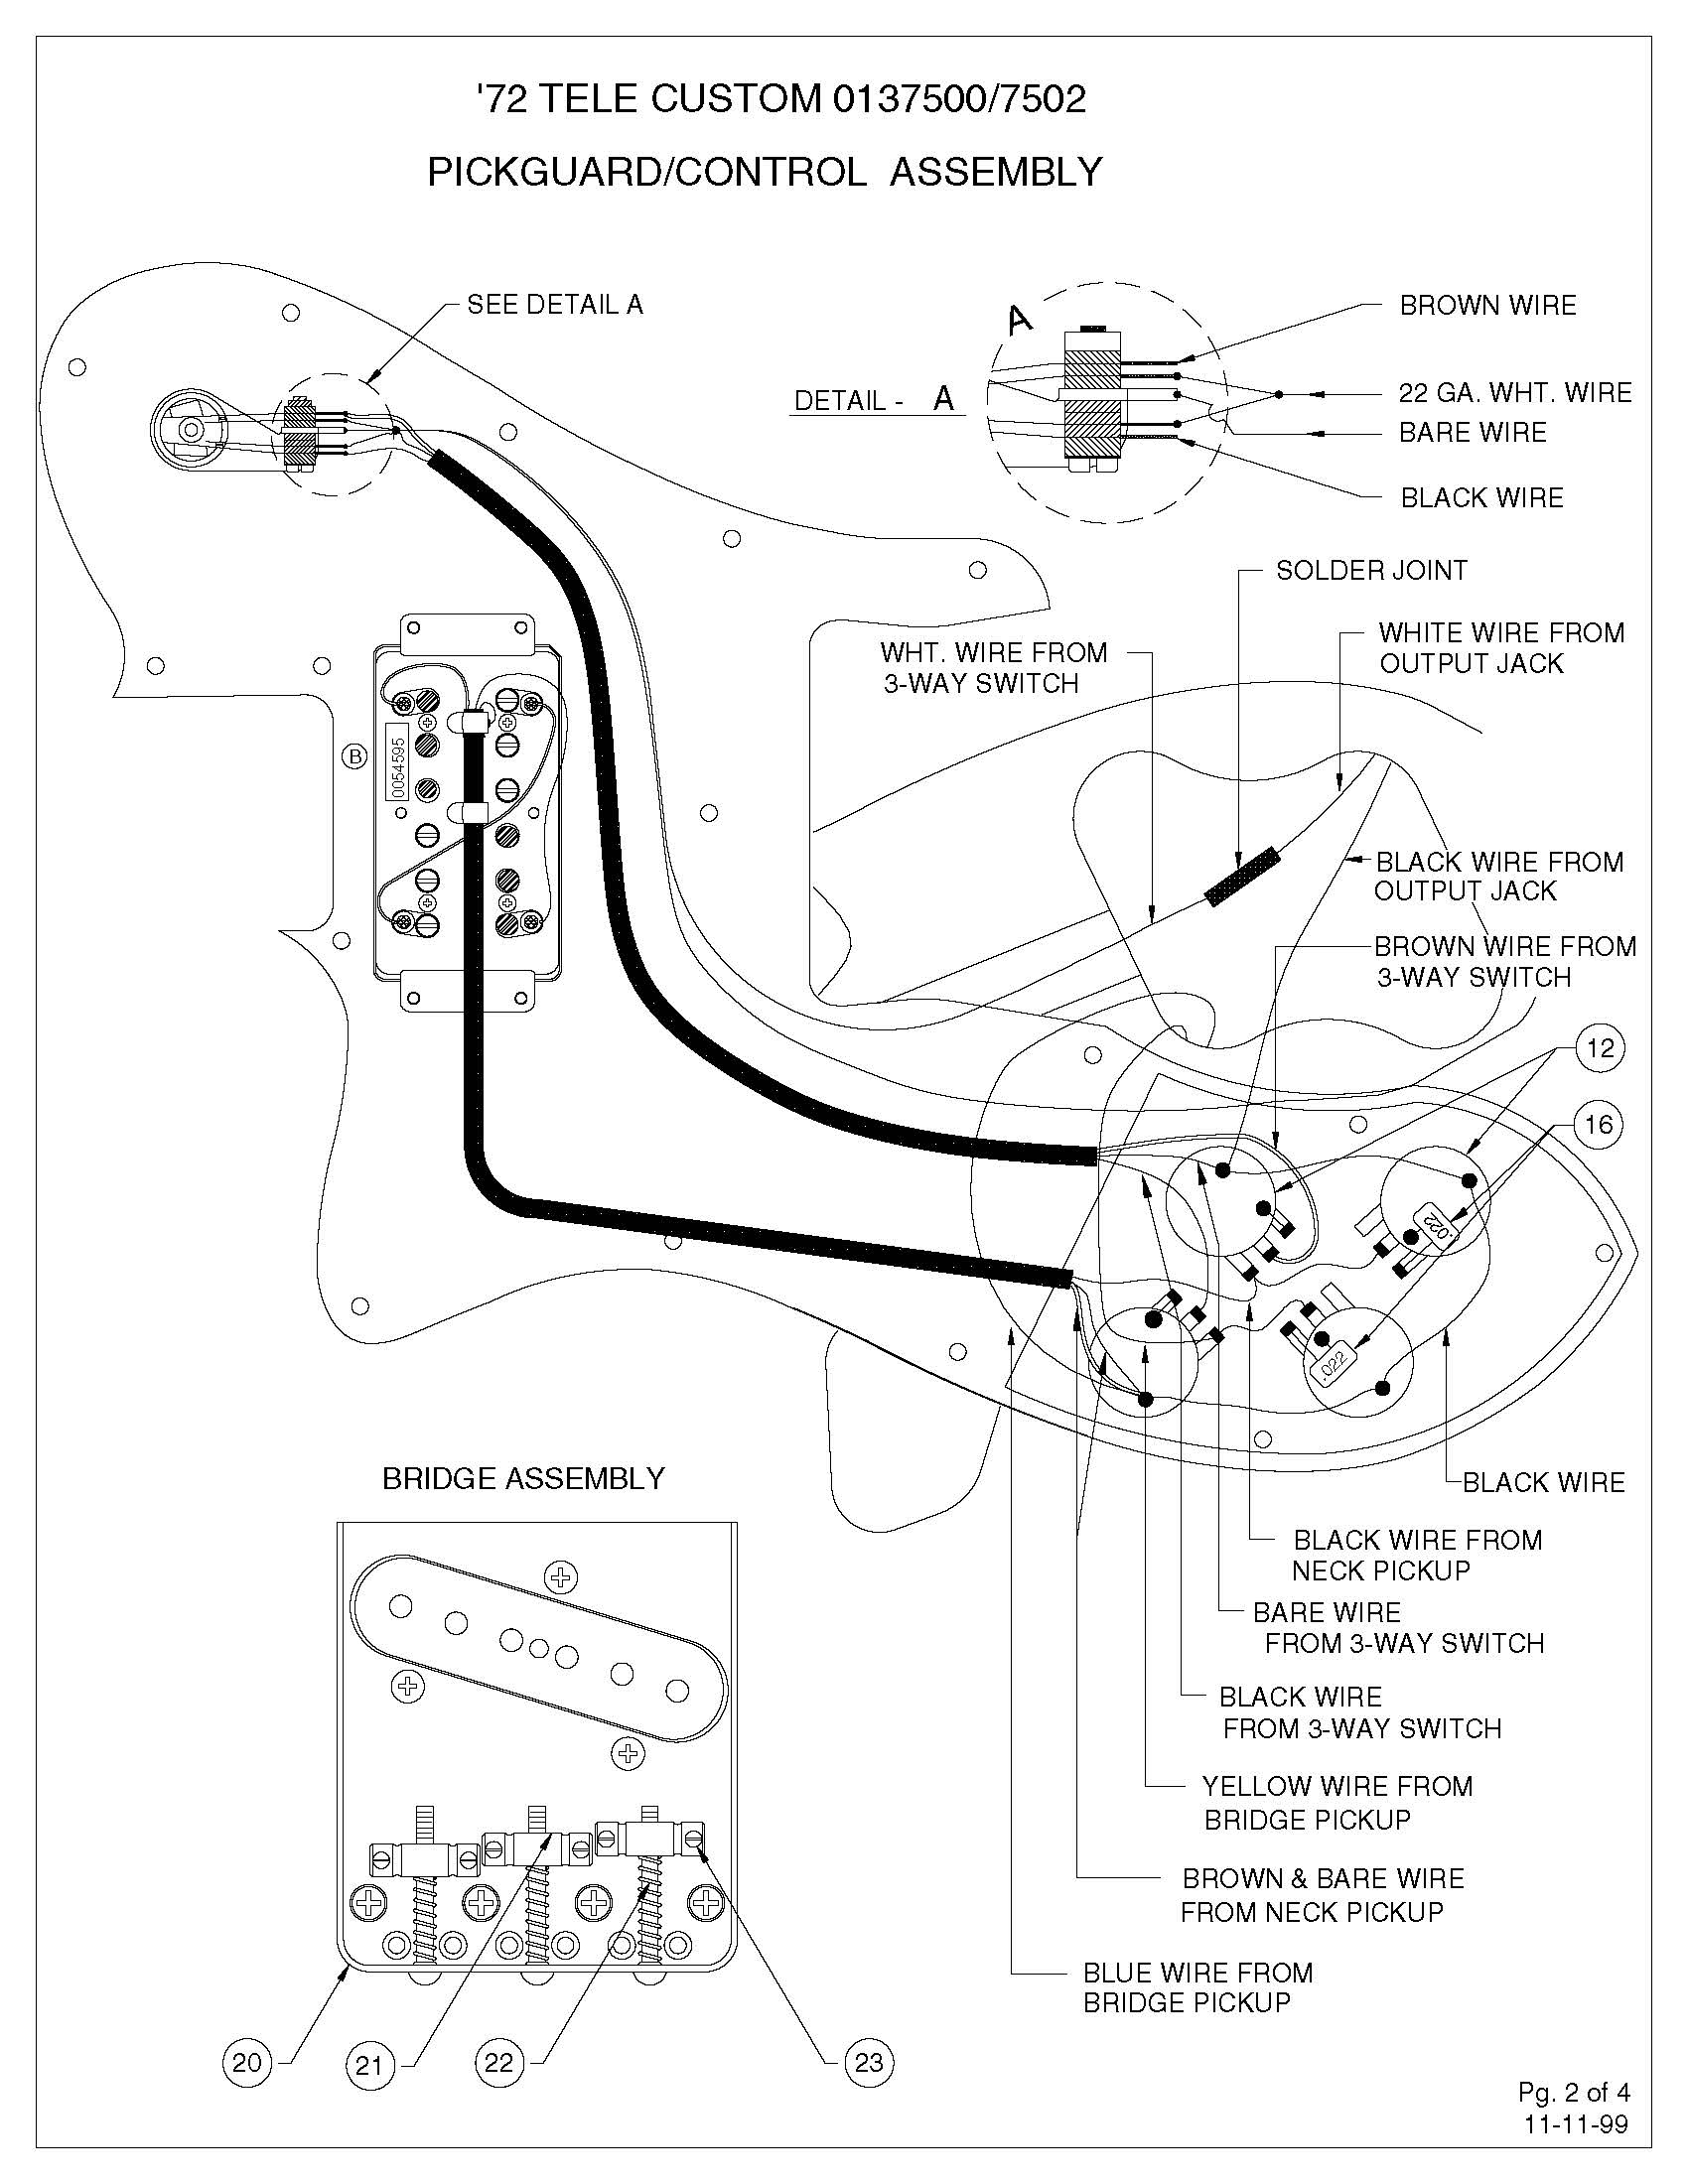 Fender Squier Wiring Diagram from getdrawings.com